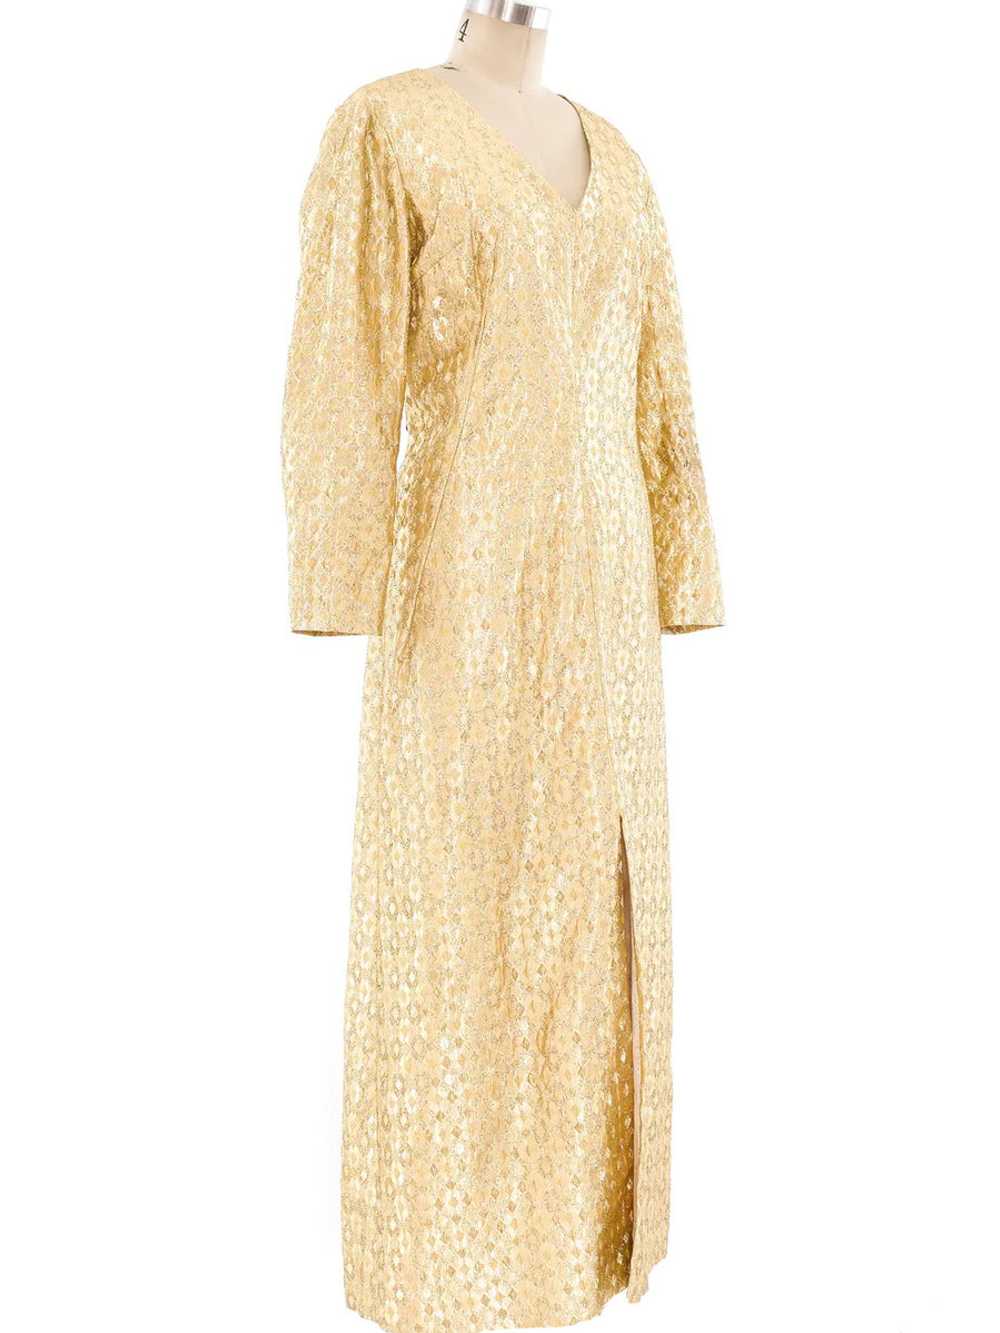 Metallic Gold Lamé Maxi Dress - image 3